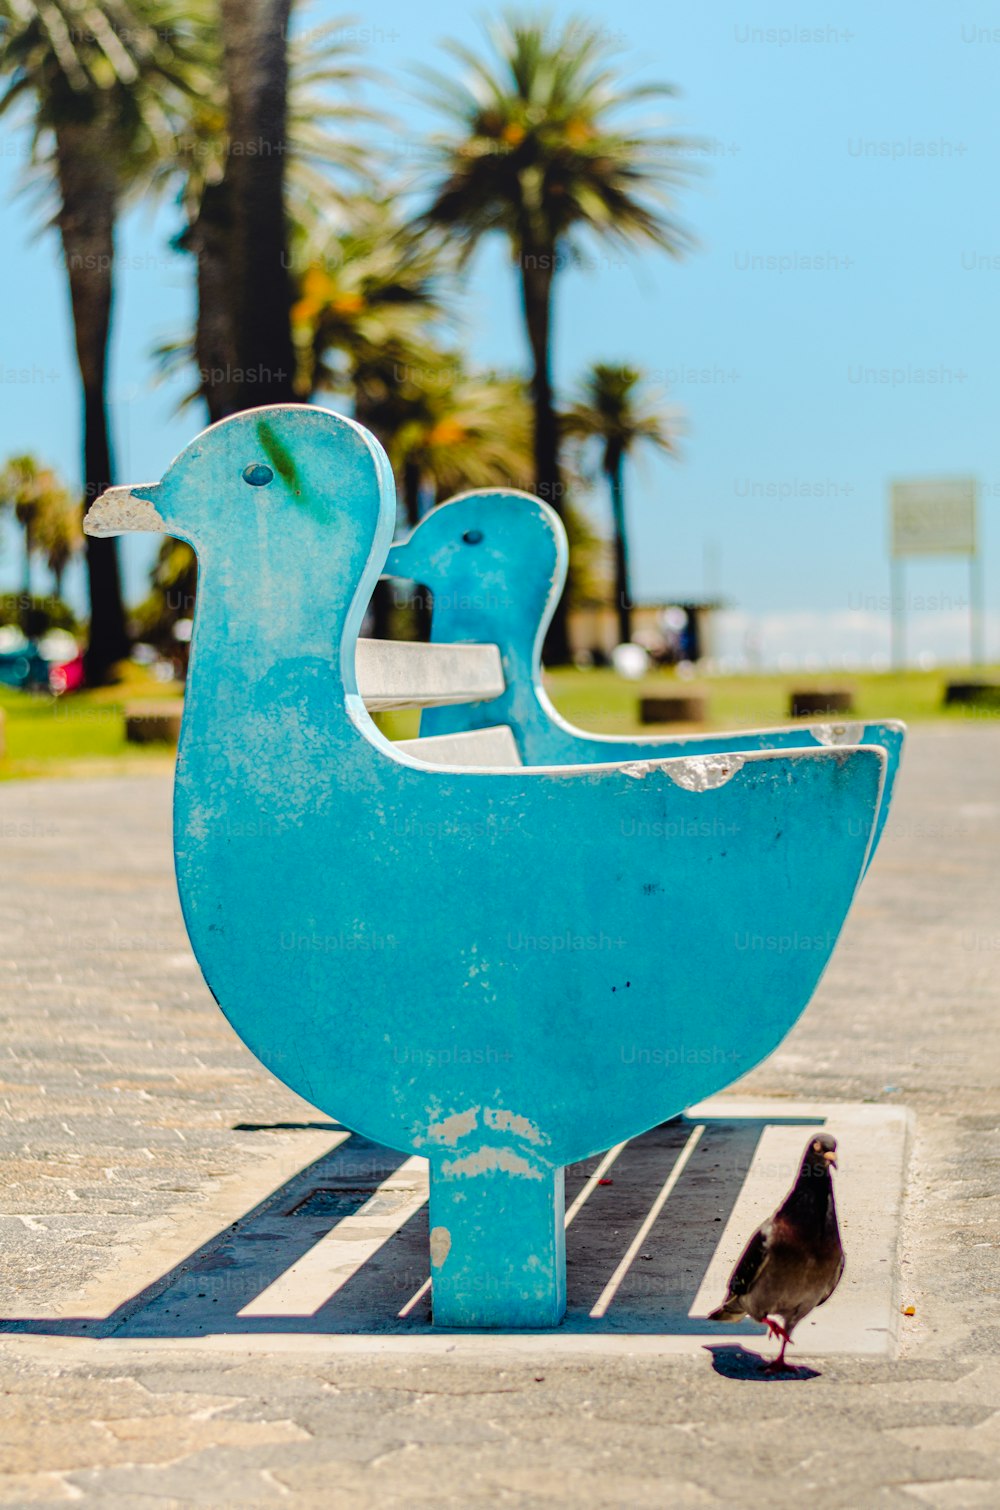 Un pequeño pájaro de pie junto a una escultura azul